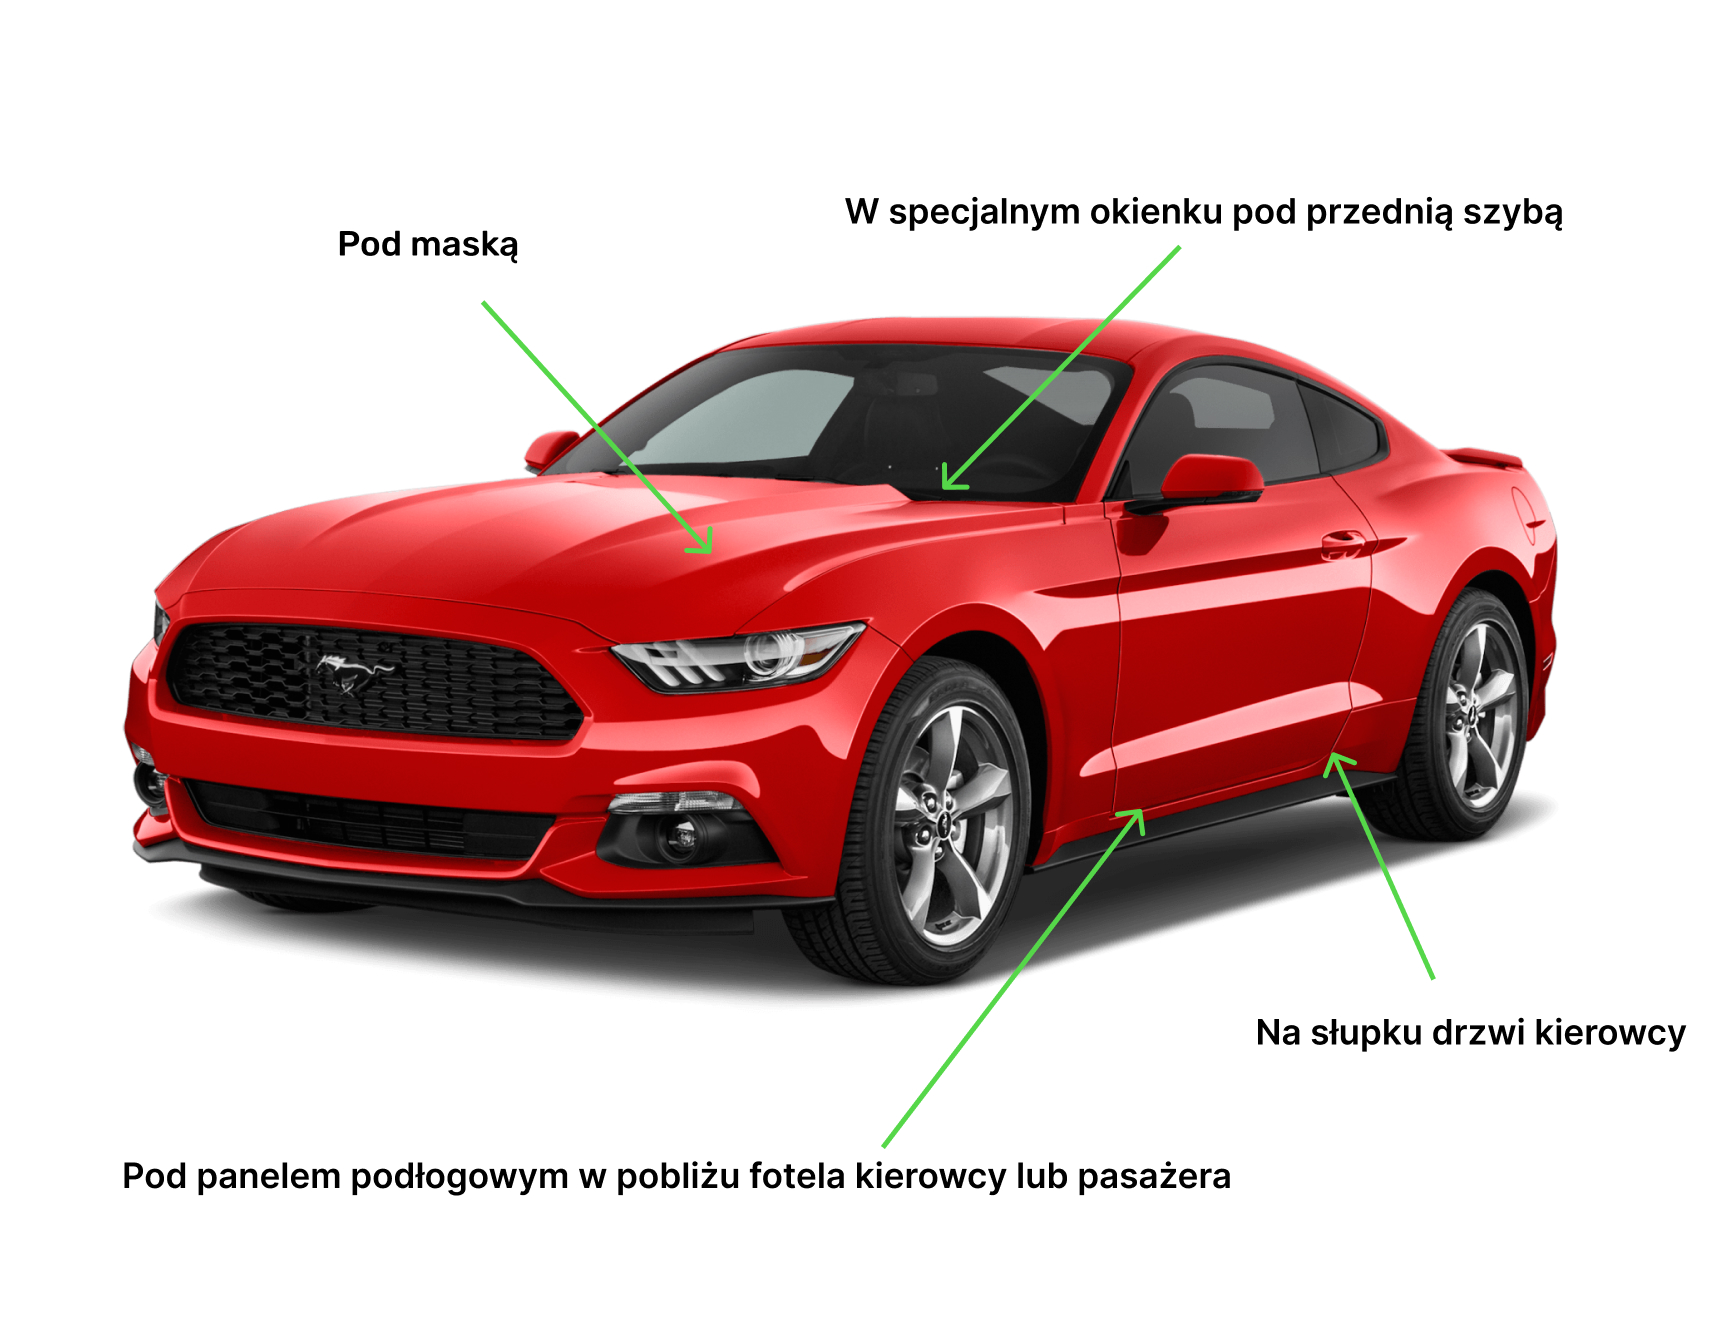 Czerwony samochód Ford Mustang ze strzałkami wskazującymi miejsca gdzie można znaleźć numer VIN Strzałki i podpisy określają następujące miejsca Pod maską W specjalnym okienku pod przednią szybą Na słupku drzwi kierowcy Pod panelem podłogowym w pobliżu fotela kierowcy lub pasażera